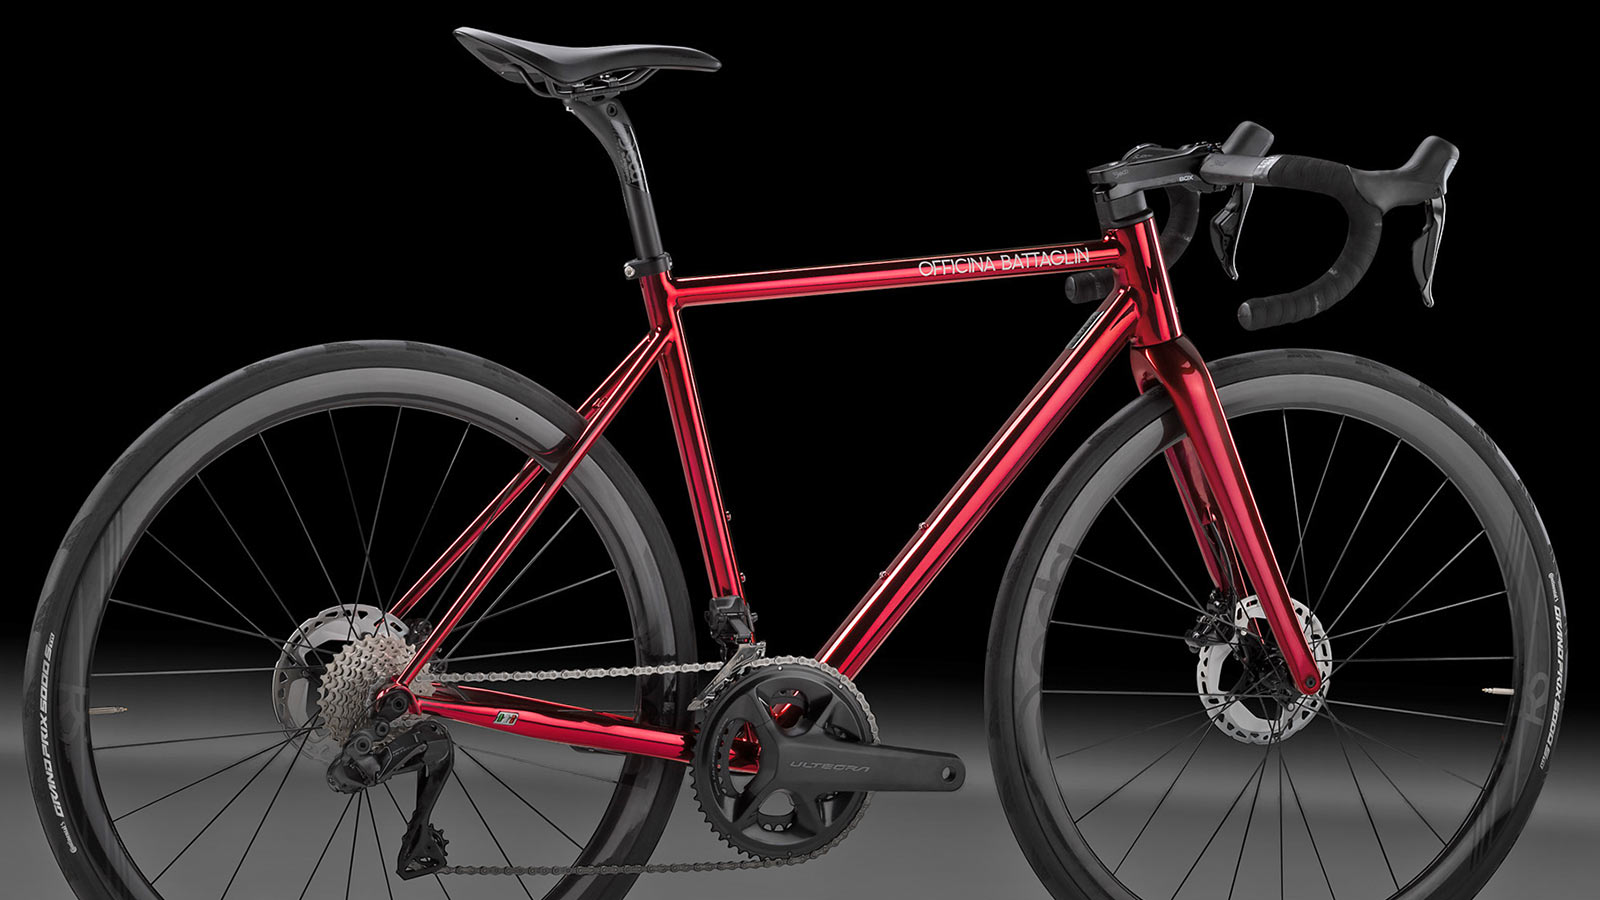 Officina Battaglin Grand Tour custom Italian steel endurance road bike in shiny cromovelato red, detail